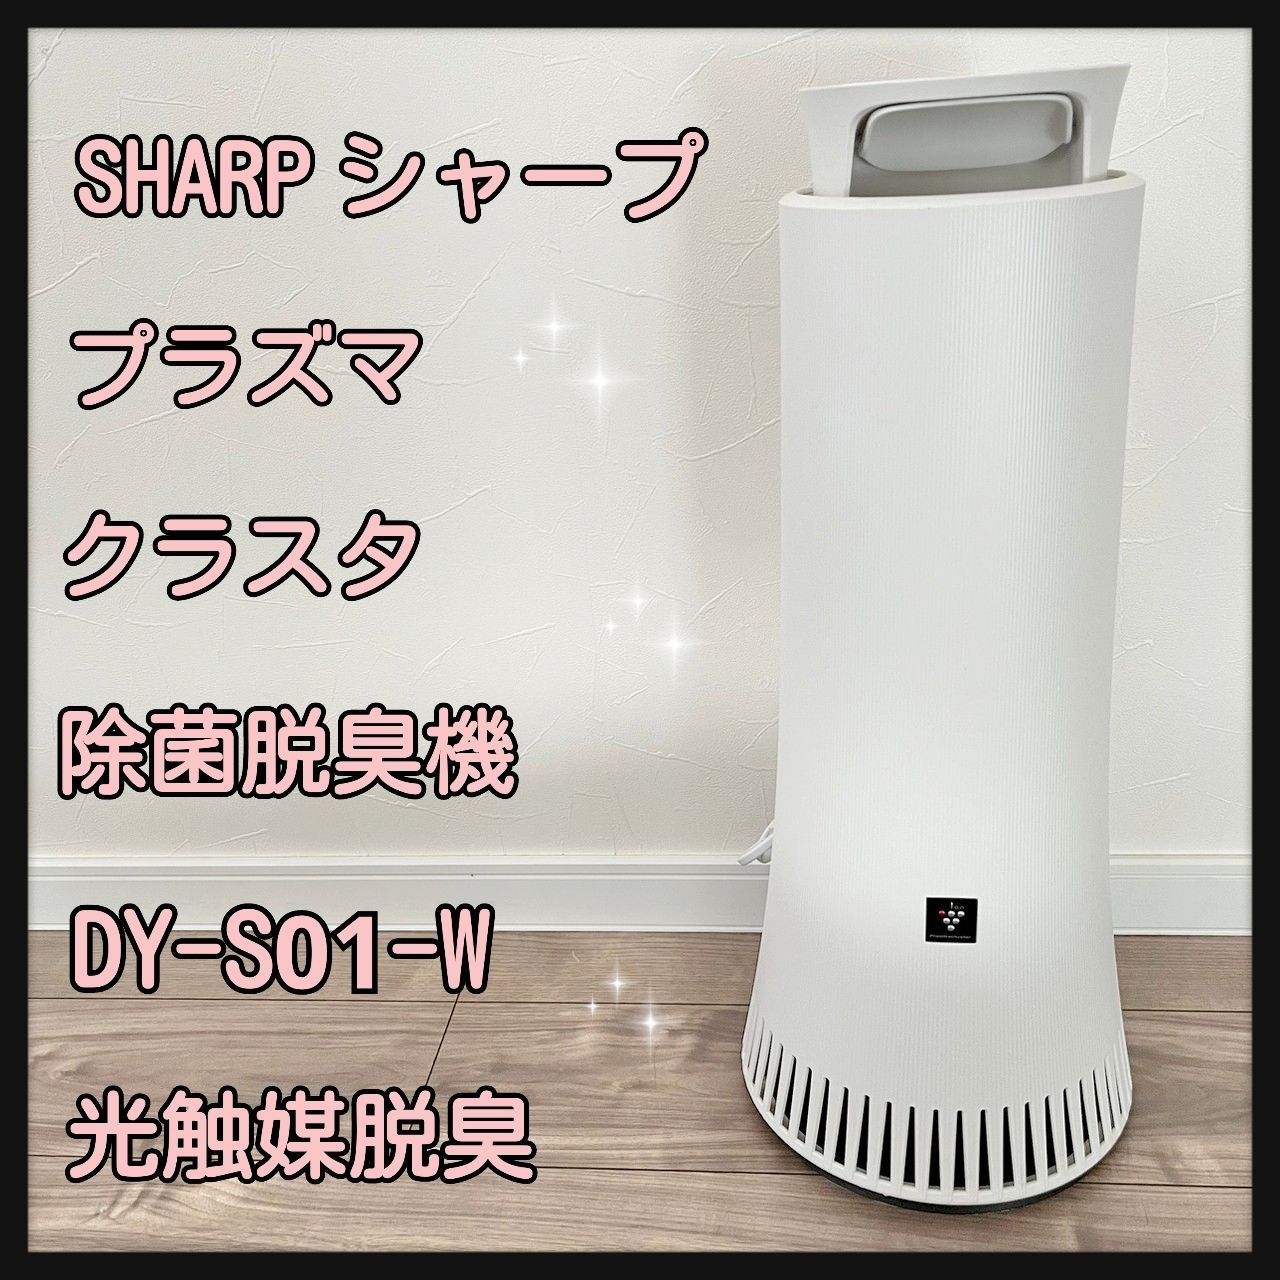 中古品ですが美品ですSHARP 脱臭機 DY S01 W 2019年式 - 空気清浄機